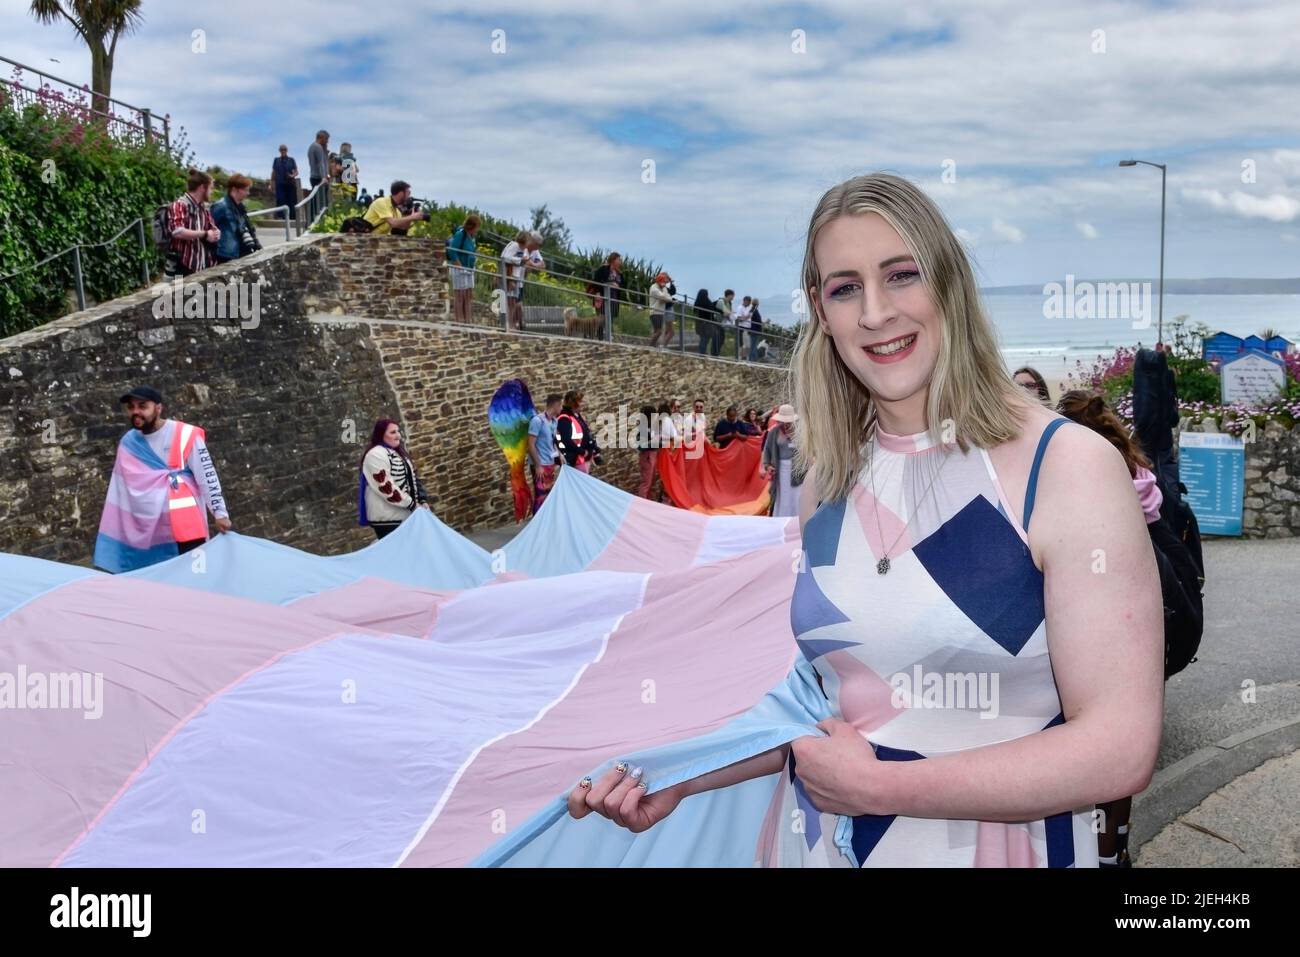 La Bandera de Orgullo Transgénero celebrada por los participantes en el desfile de Orgullo de Cornwall Pride en el centro de Newquay en el Reino Unido. Foto de stock